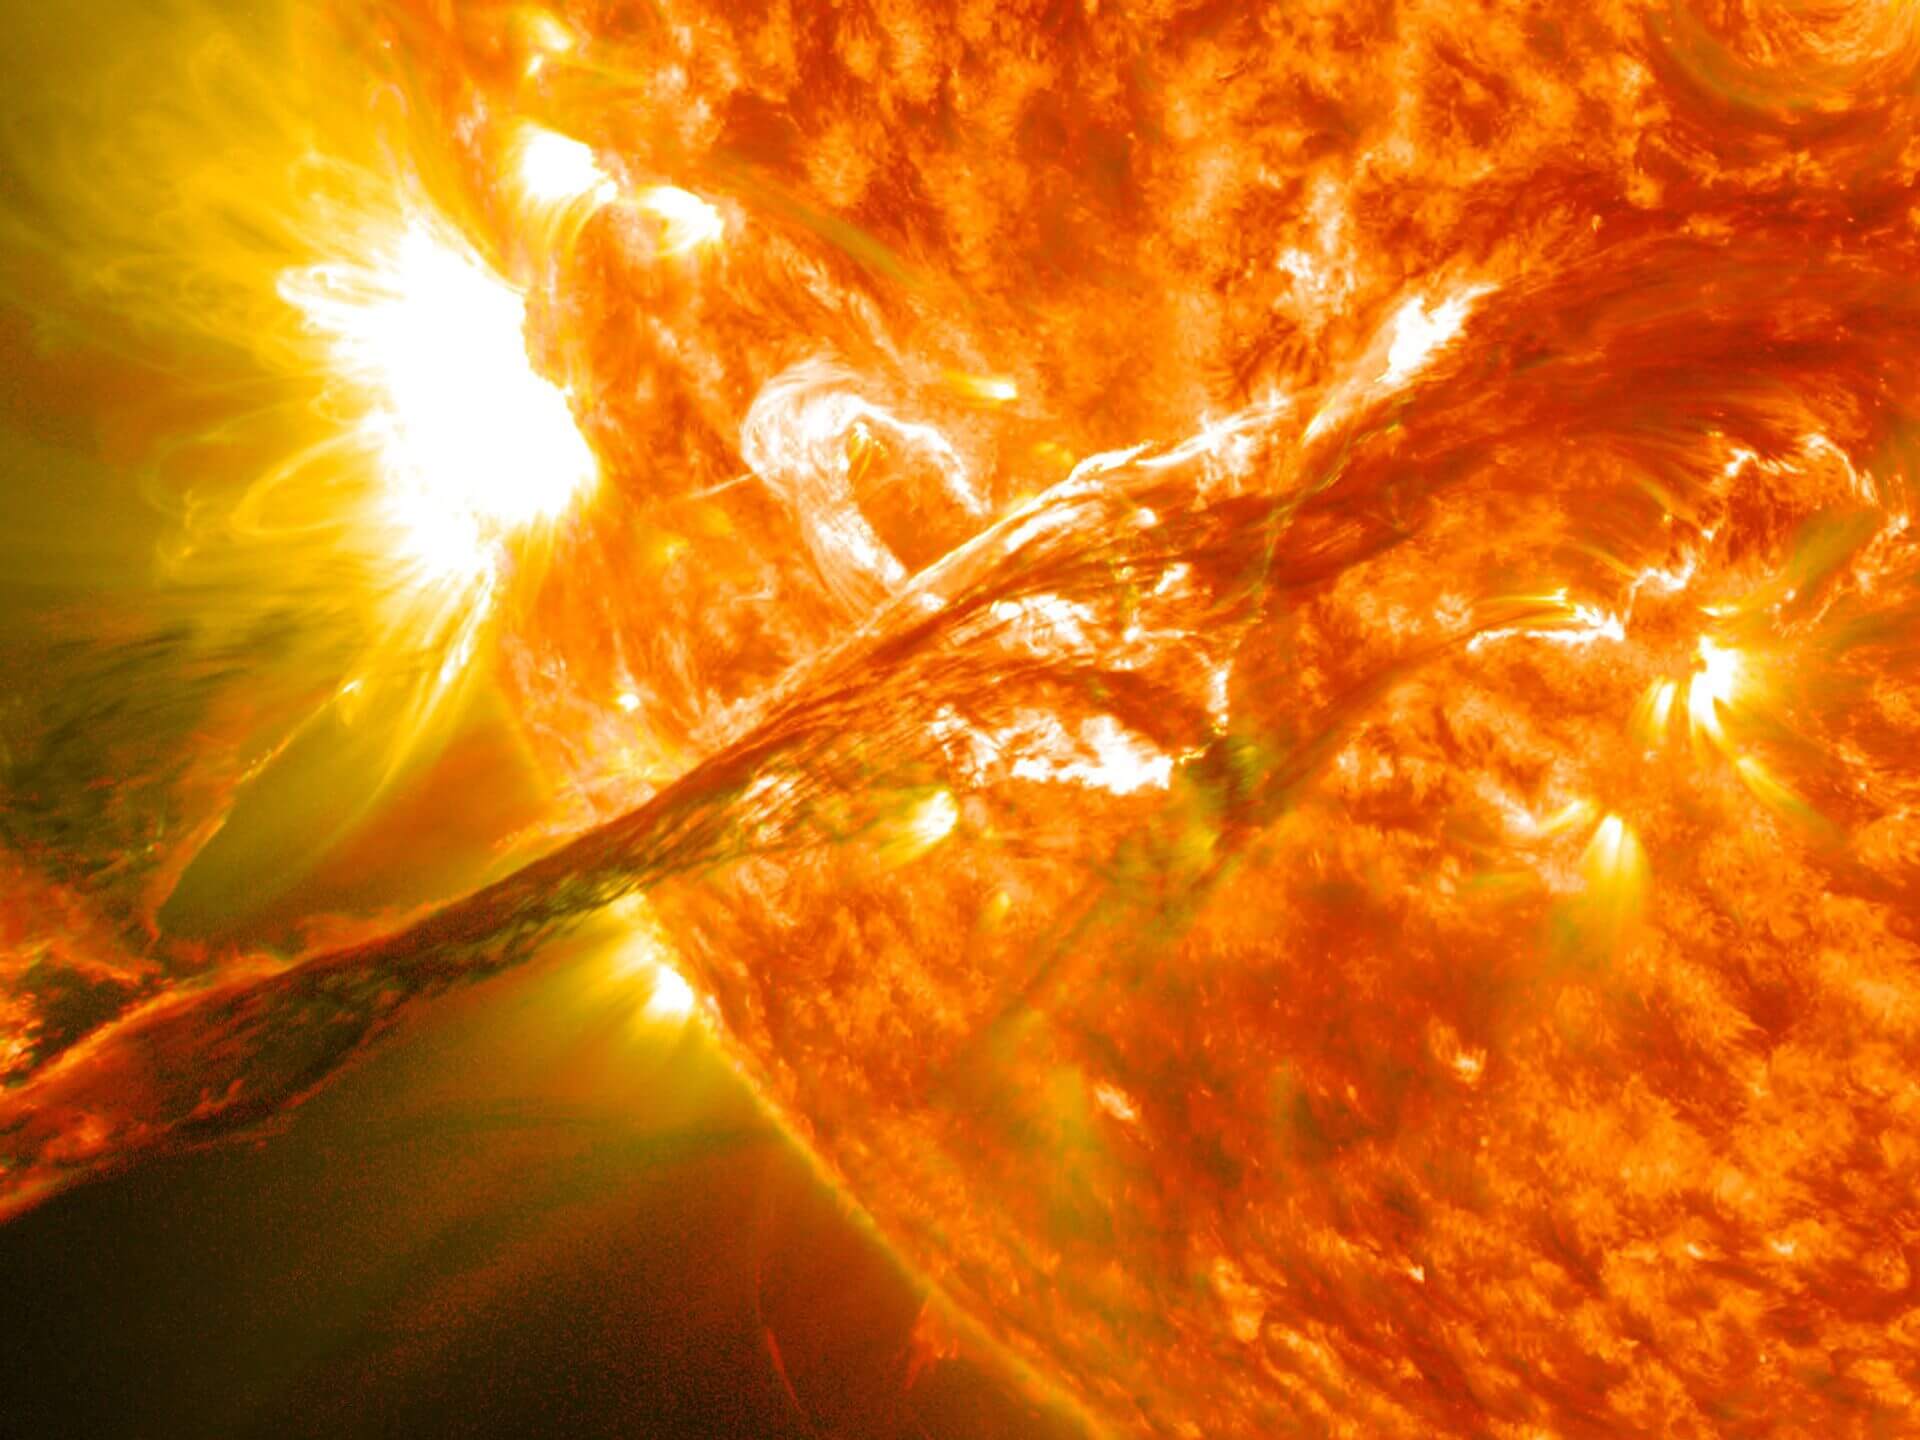 Термоядерный синтез. На Солнце происходит термоядерный синтез, в результате чего вырабатывается колоссальная энергия. Фото.